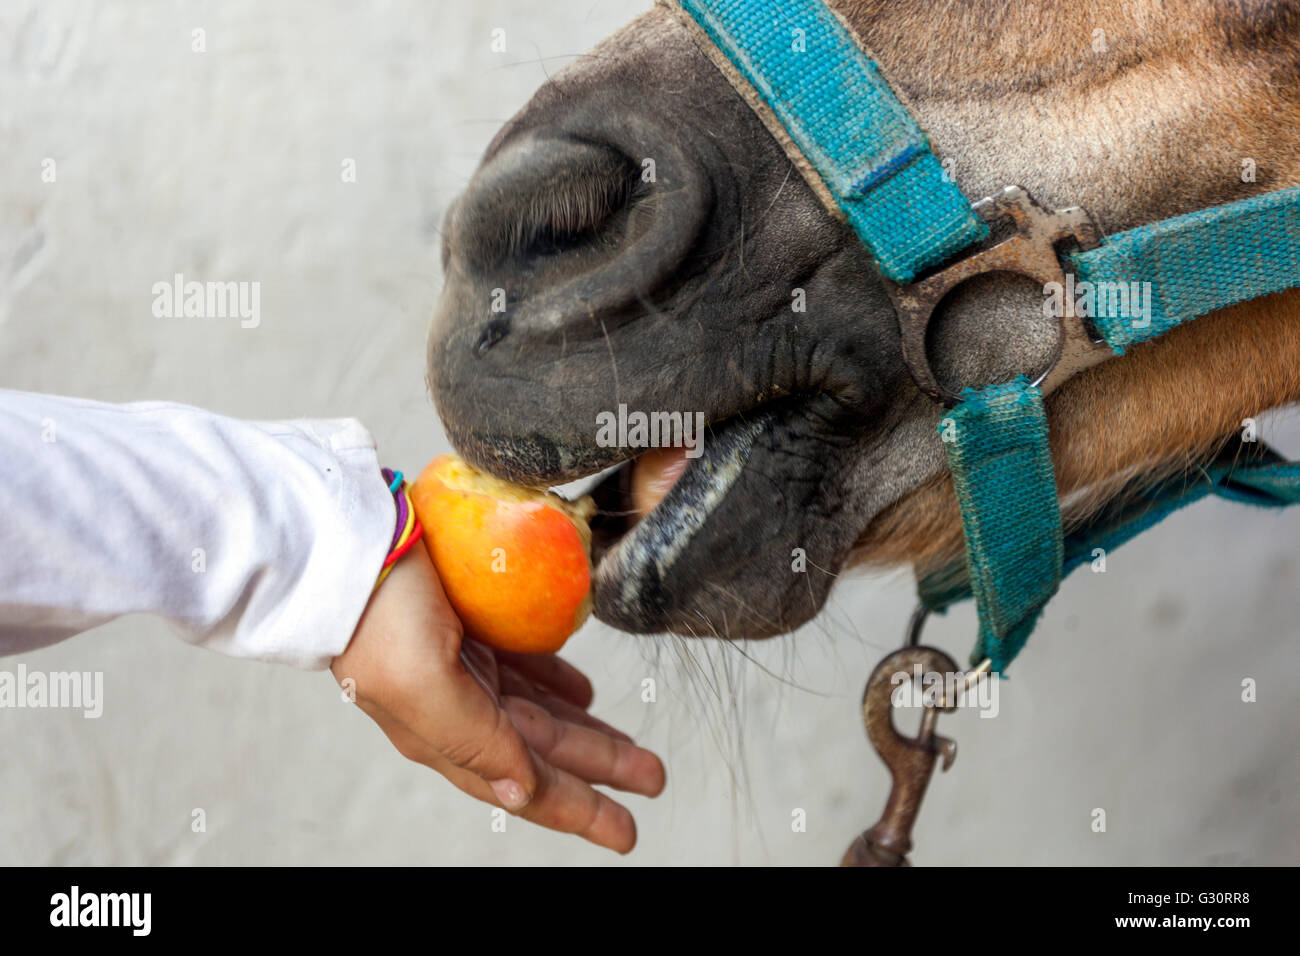 Enfant nourrissant un cheval une pomme, bride Banque D'Images